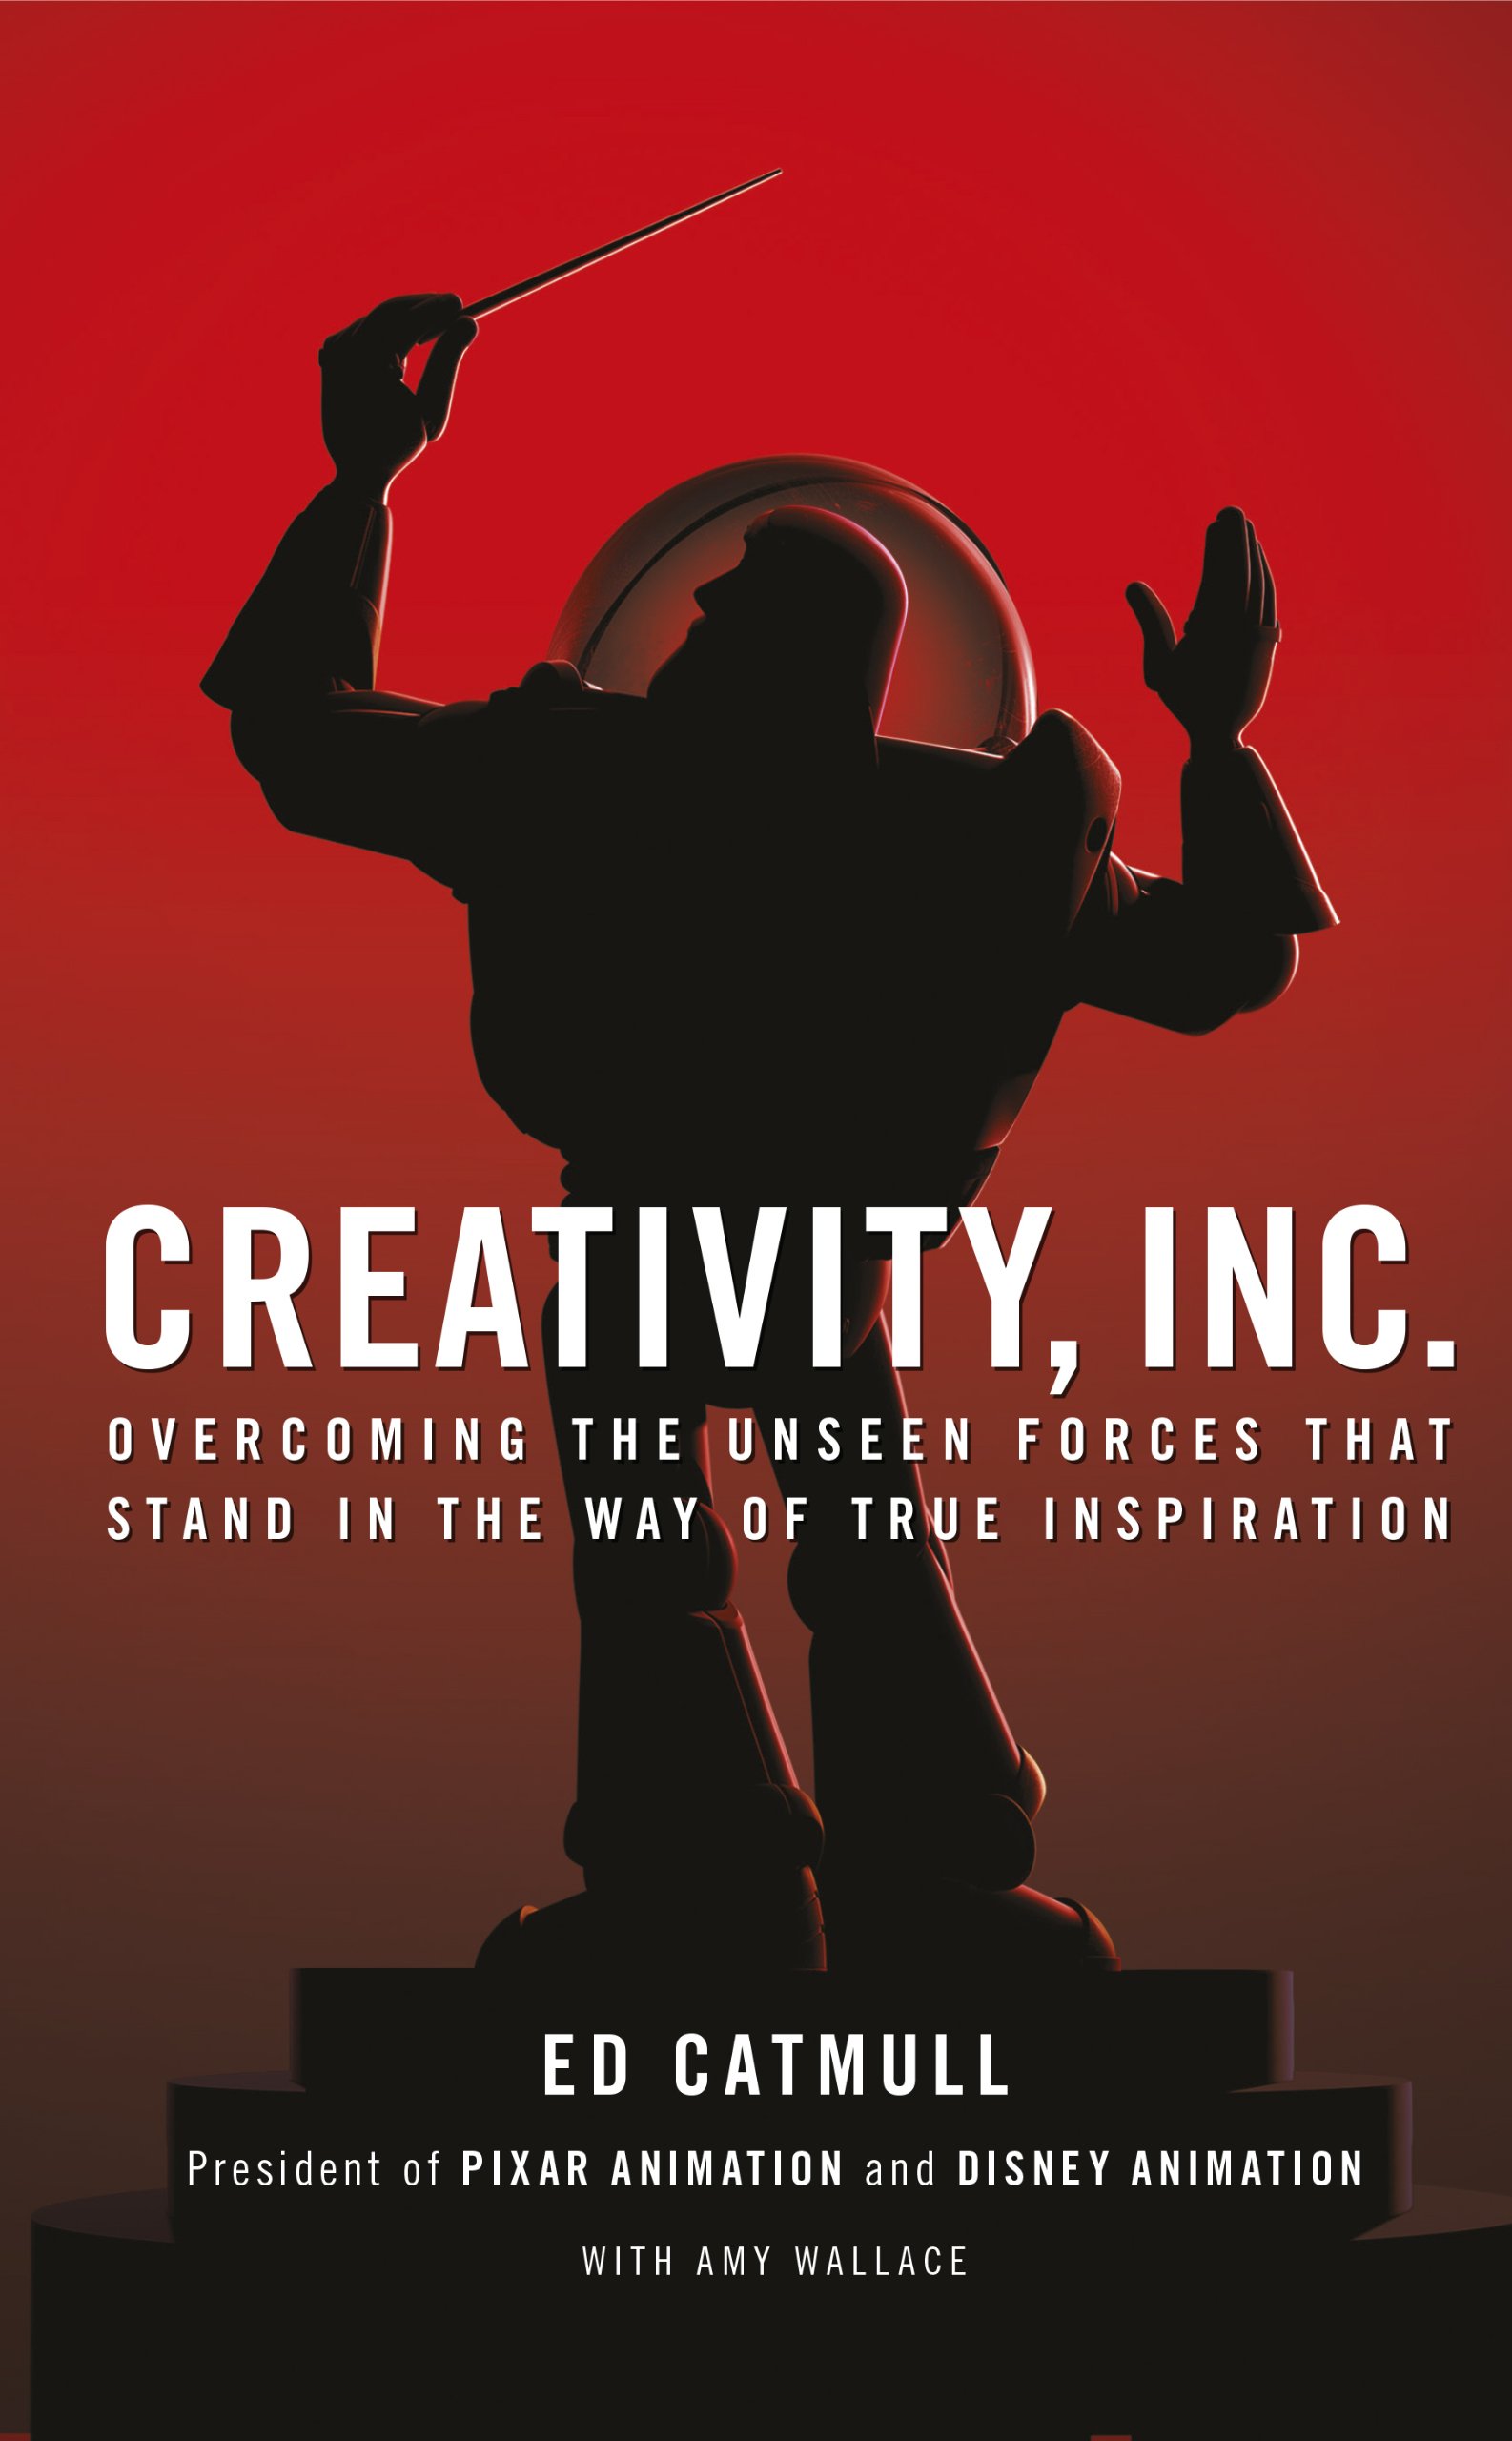 Creativity Inc. by Edwin Catmull & Amy Wallace